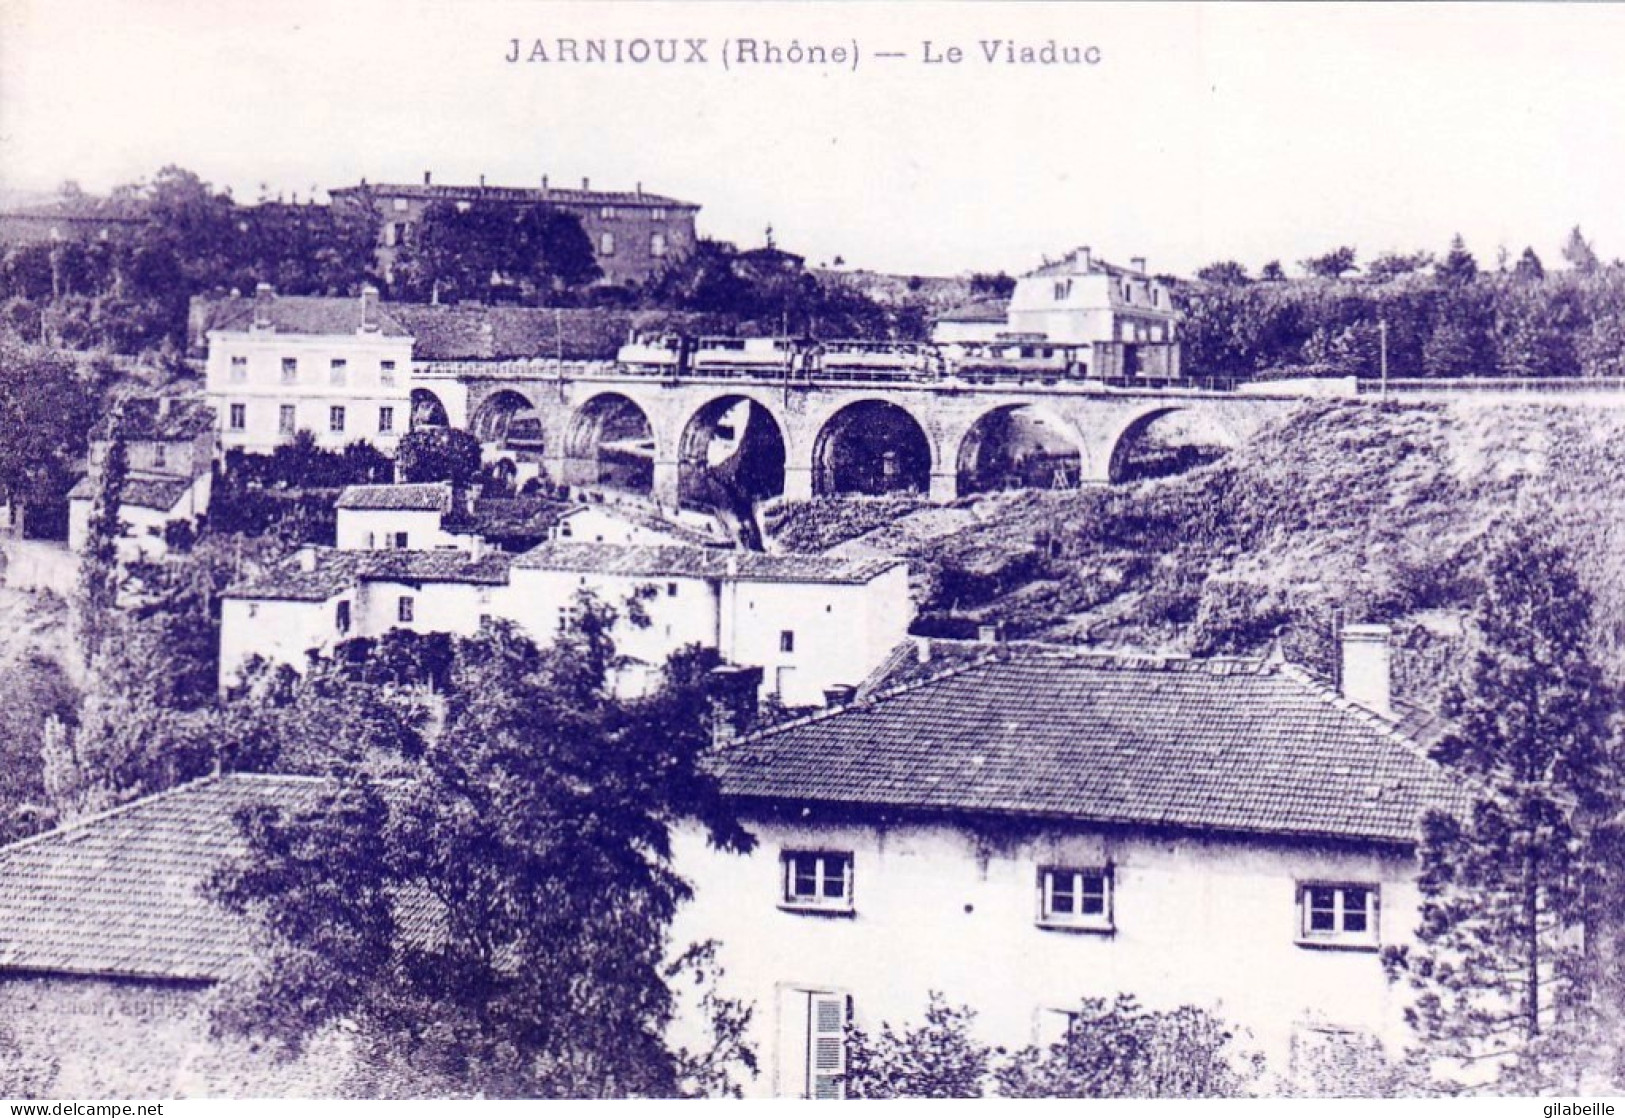 Photo - 69 - Rhone - JARNIOUX - Le Viaduc - Retirage - Non Classificati